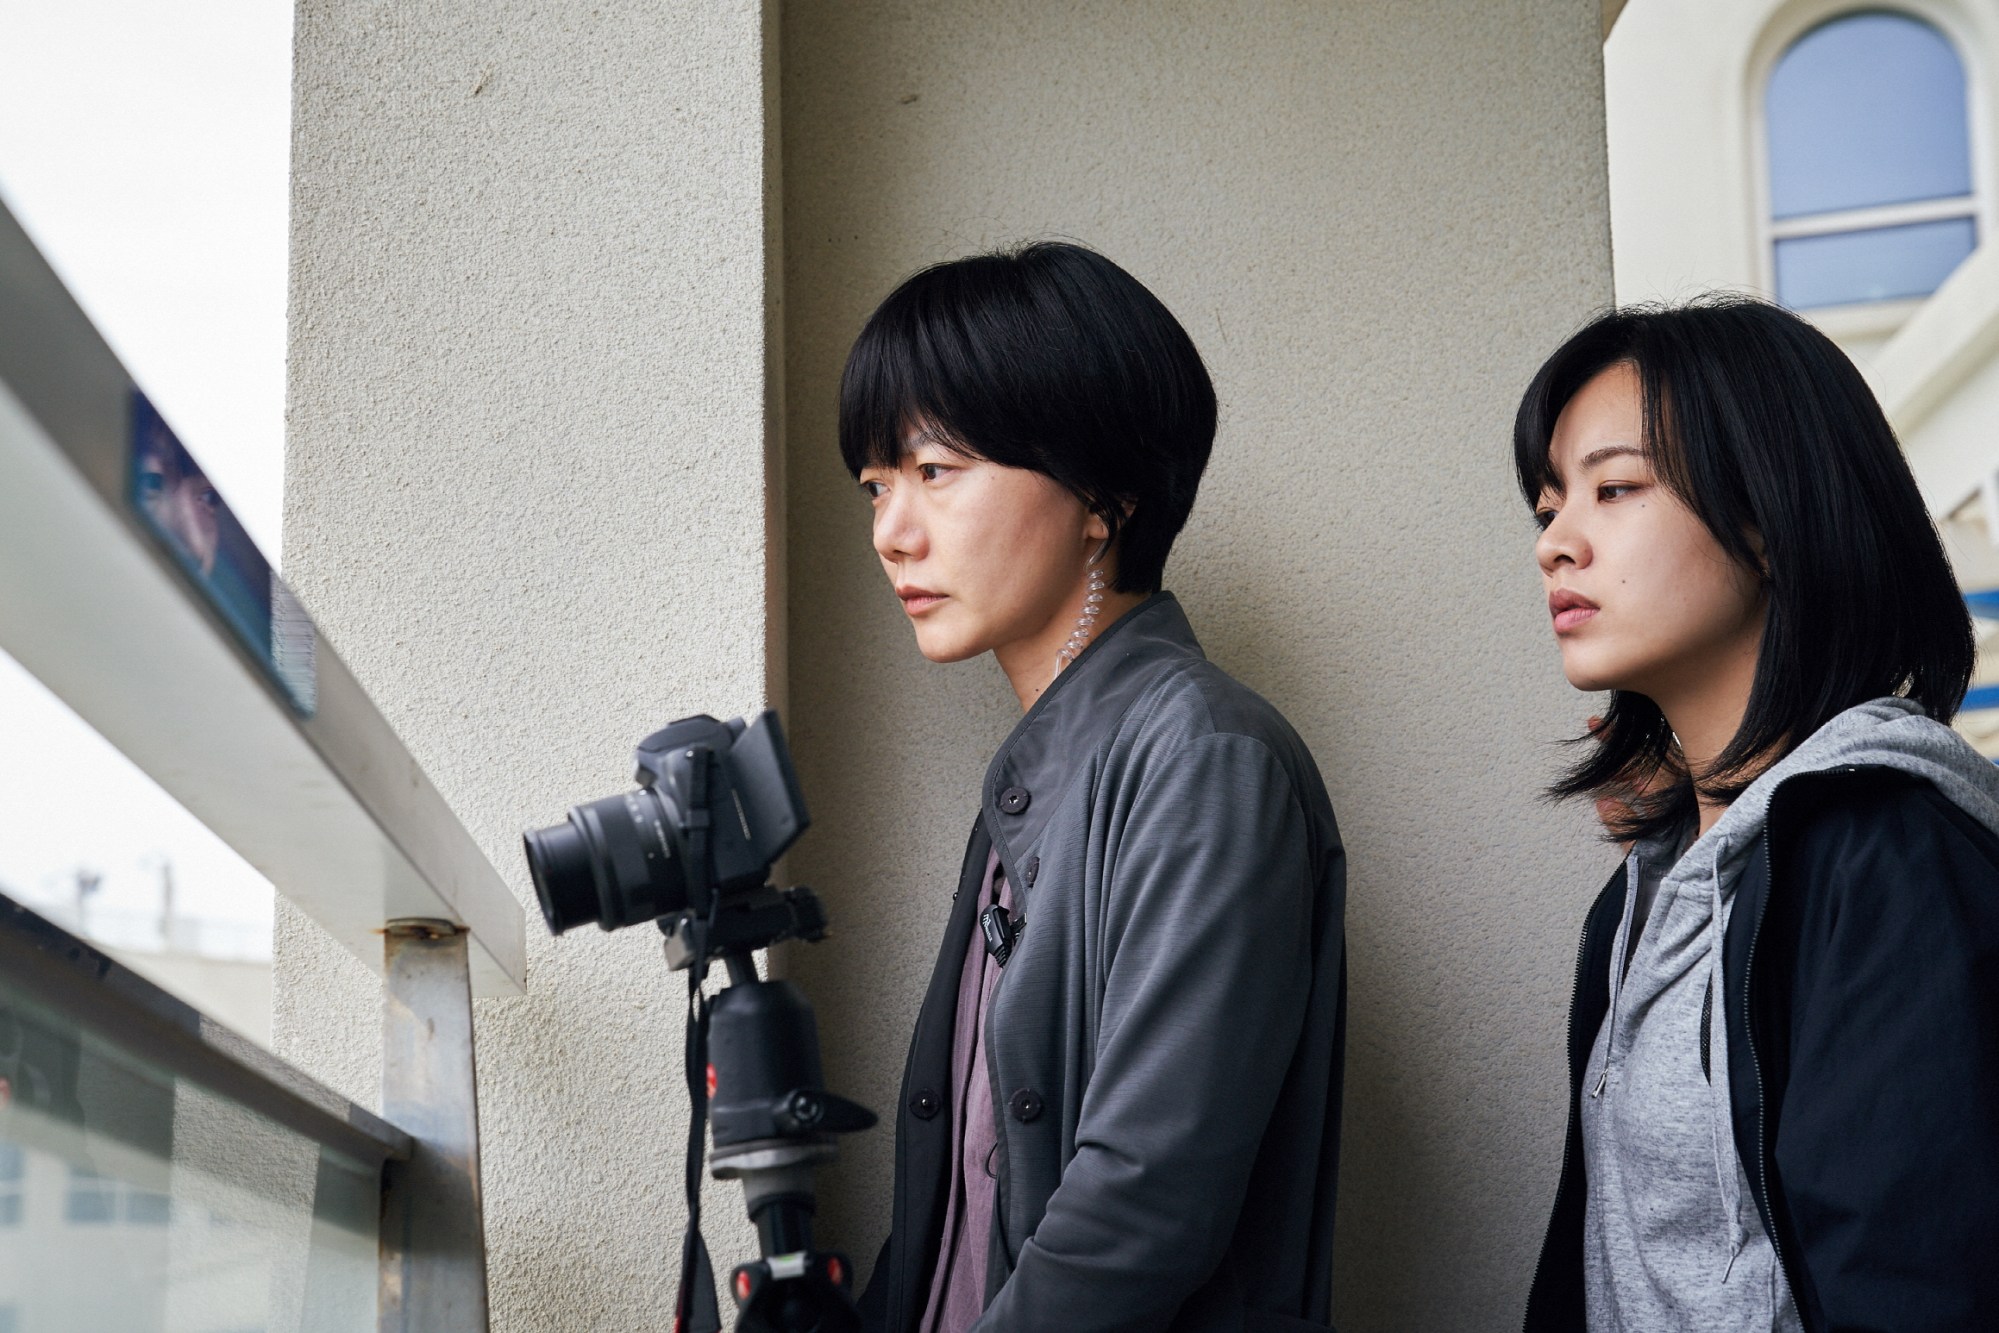 Hirokazu Kore-eda's Next Film is a Korean Drama Starring Song Kang-ho, Bae  Doona & Kang Dong-won